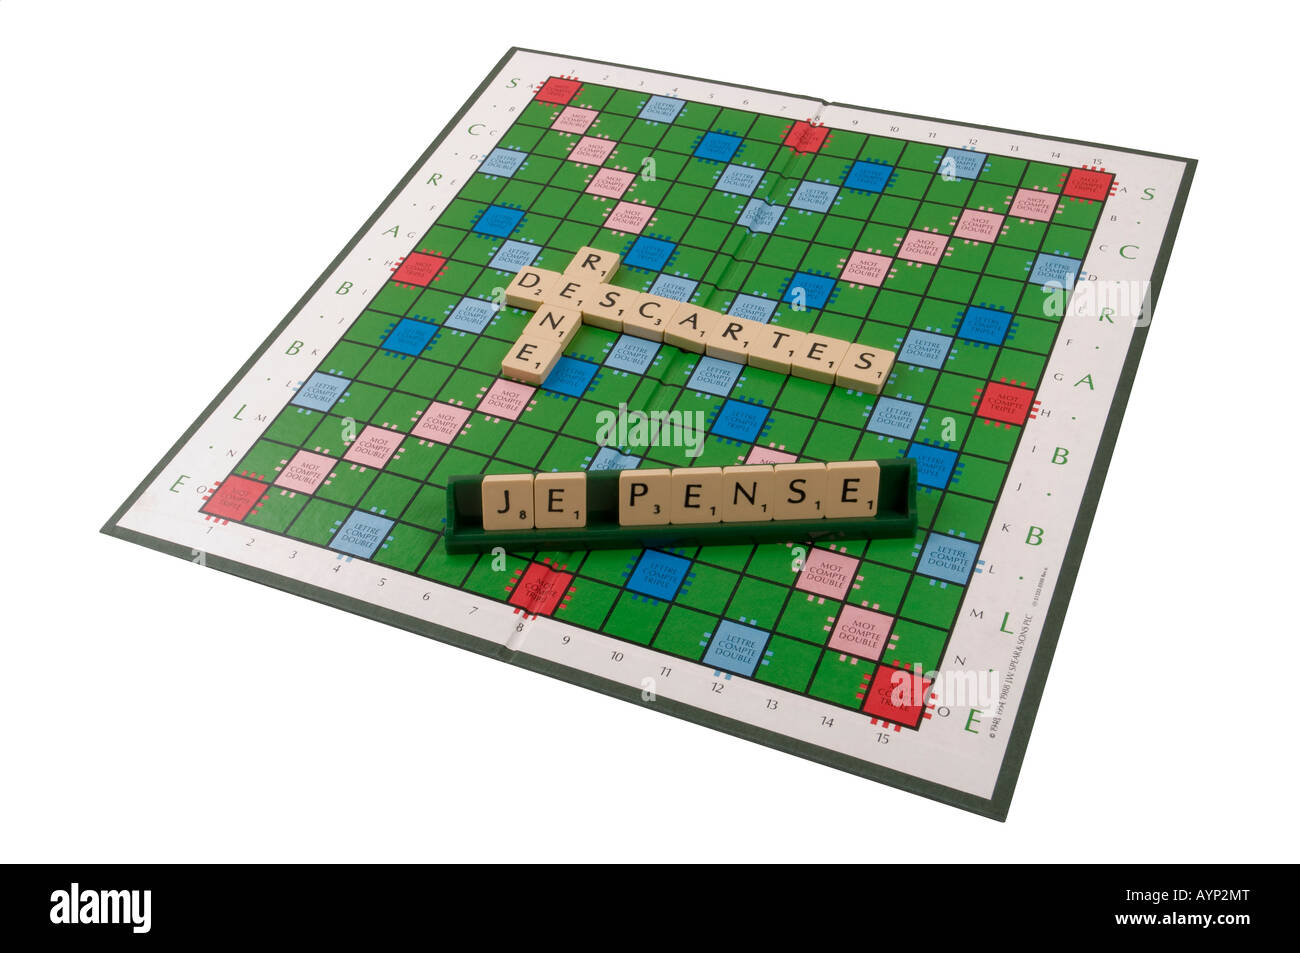 Réné Descartes - Je pense - Scrabble board. Stock Photo